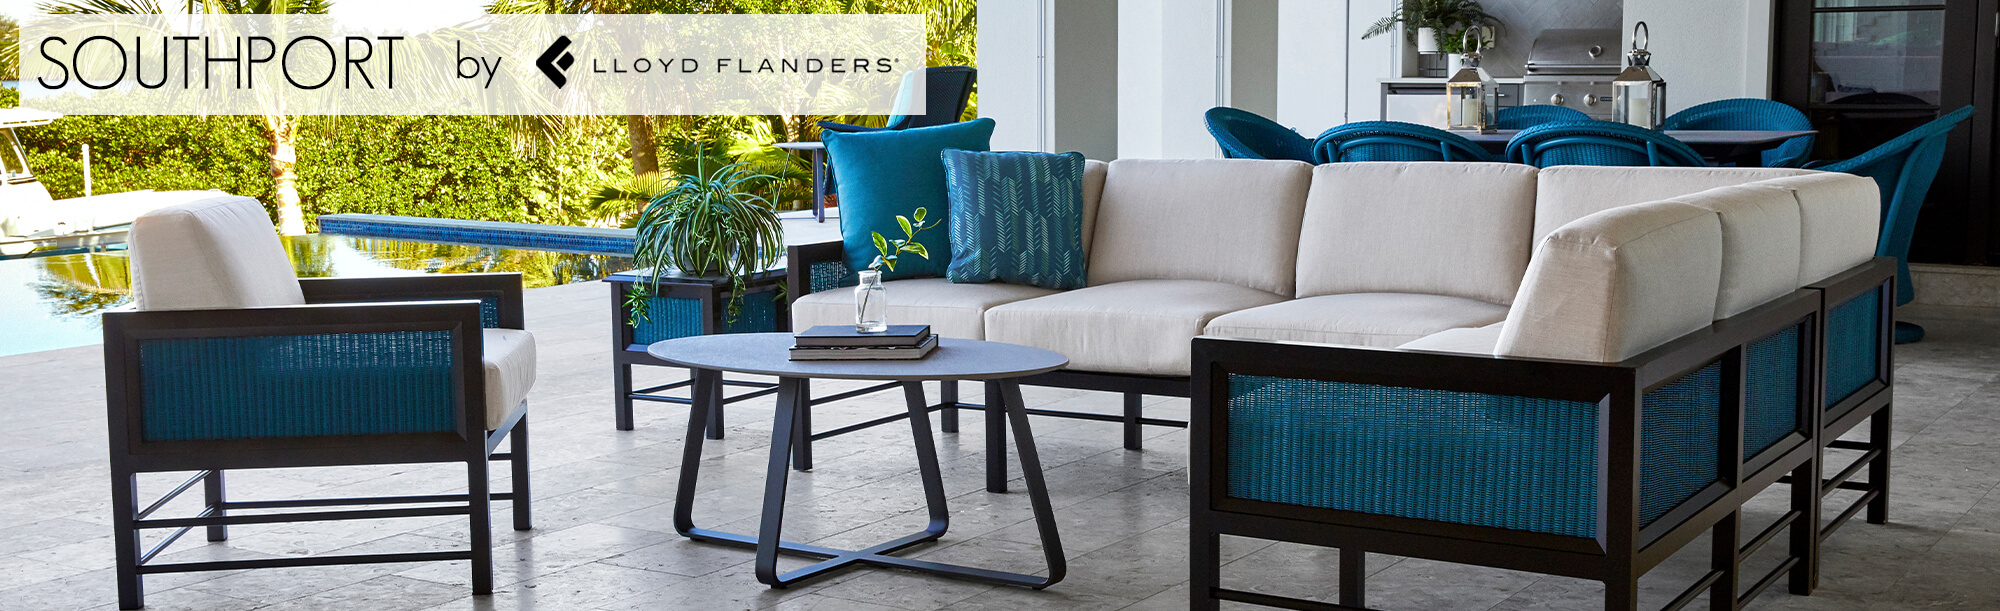 Luxury Outdoor Furniture | Premium Brands & Materials | PatioLiving